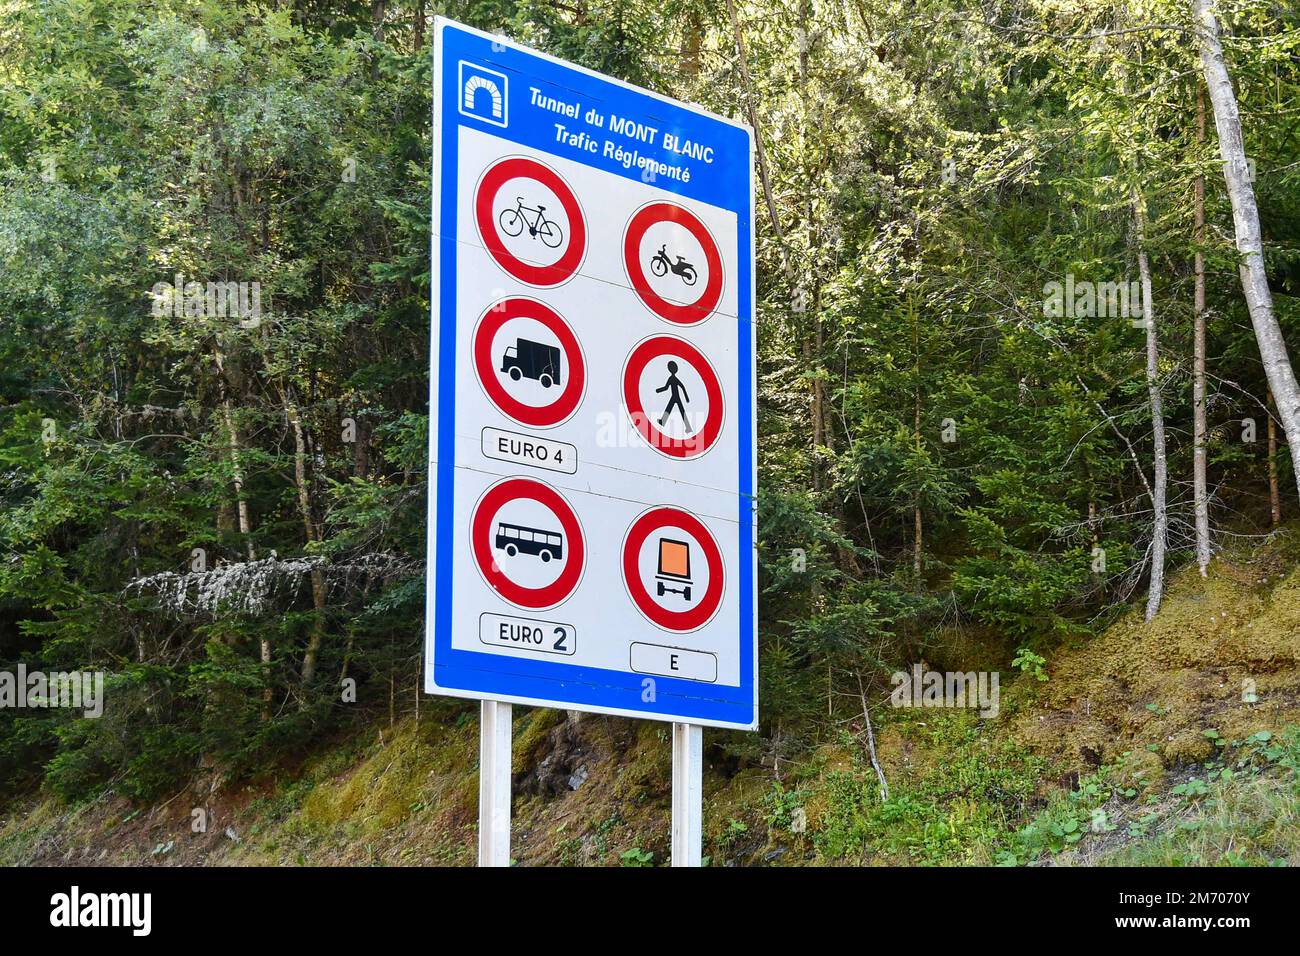 Signalisation routière indiquant la réglementation routière du tunnel du Mont blanc, Chamonix, haute Savoie, France Banque D'Images